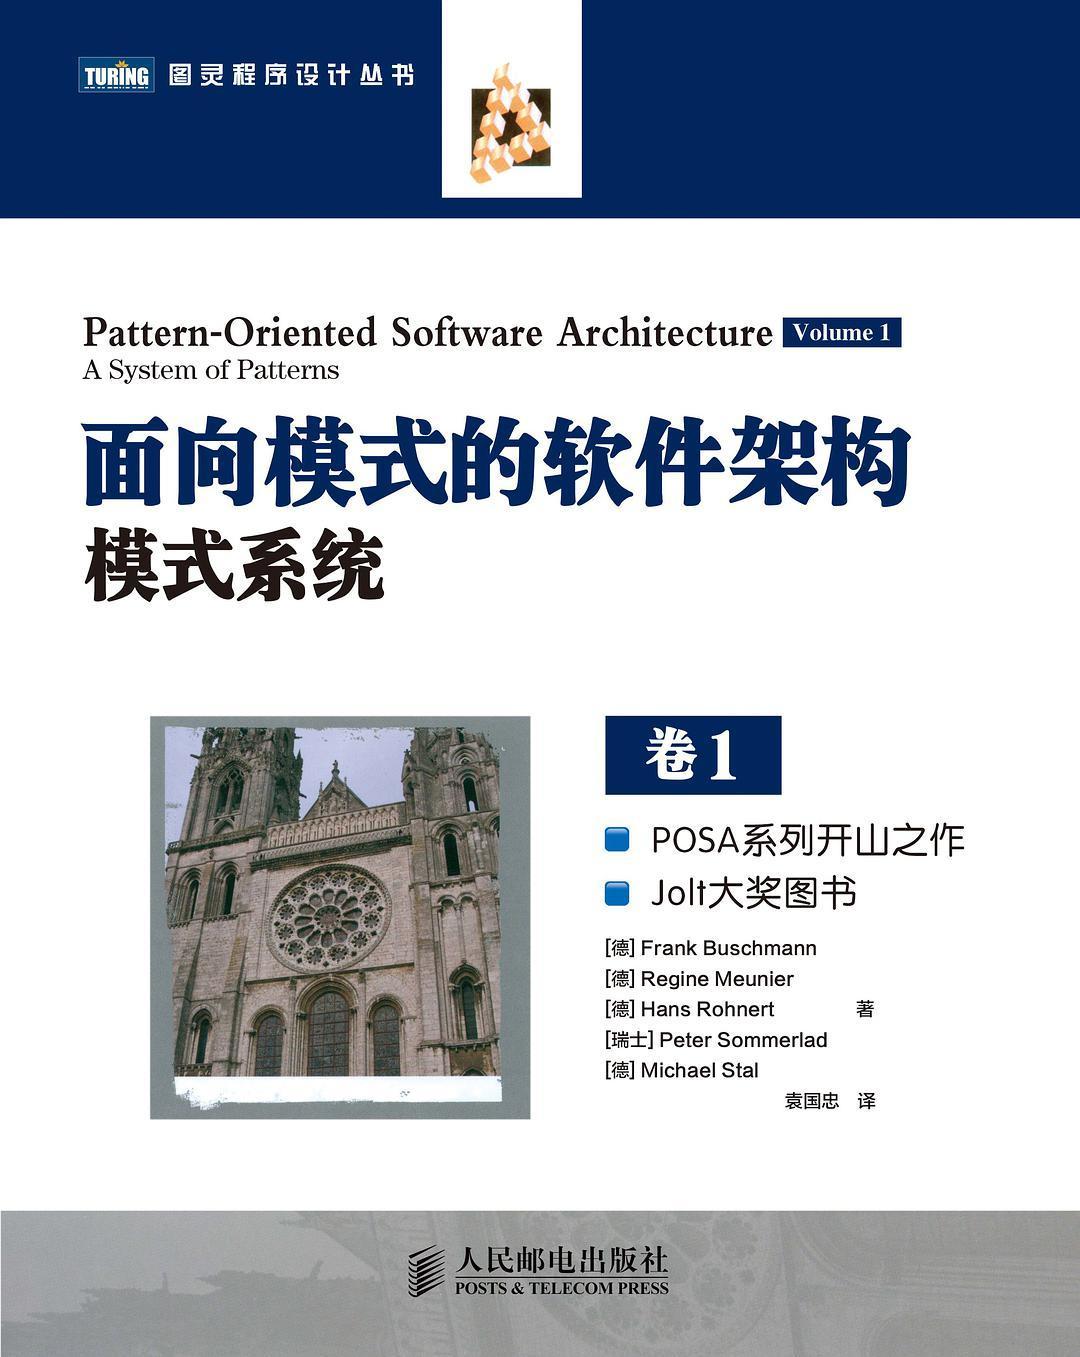 《面向模式的软件架构模式系统 卷1》.pdf - 图1